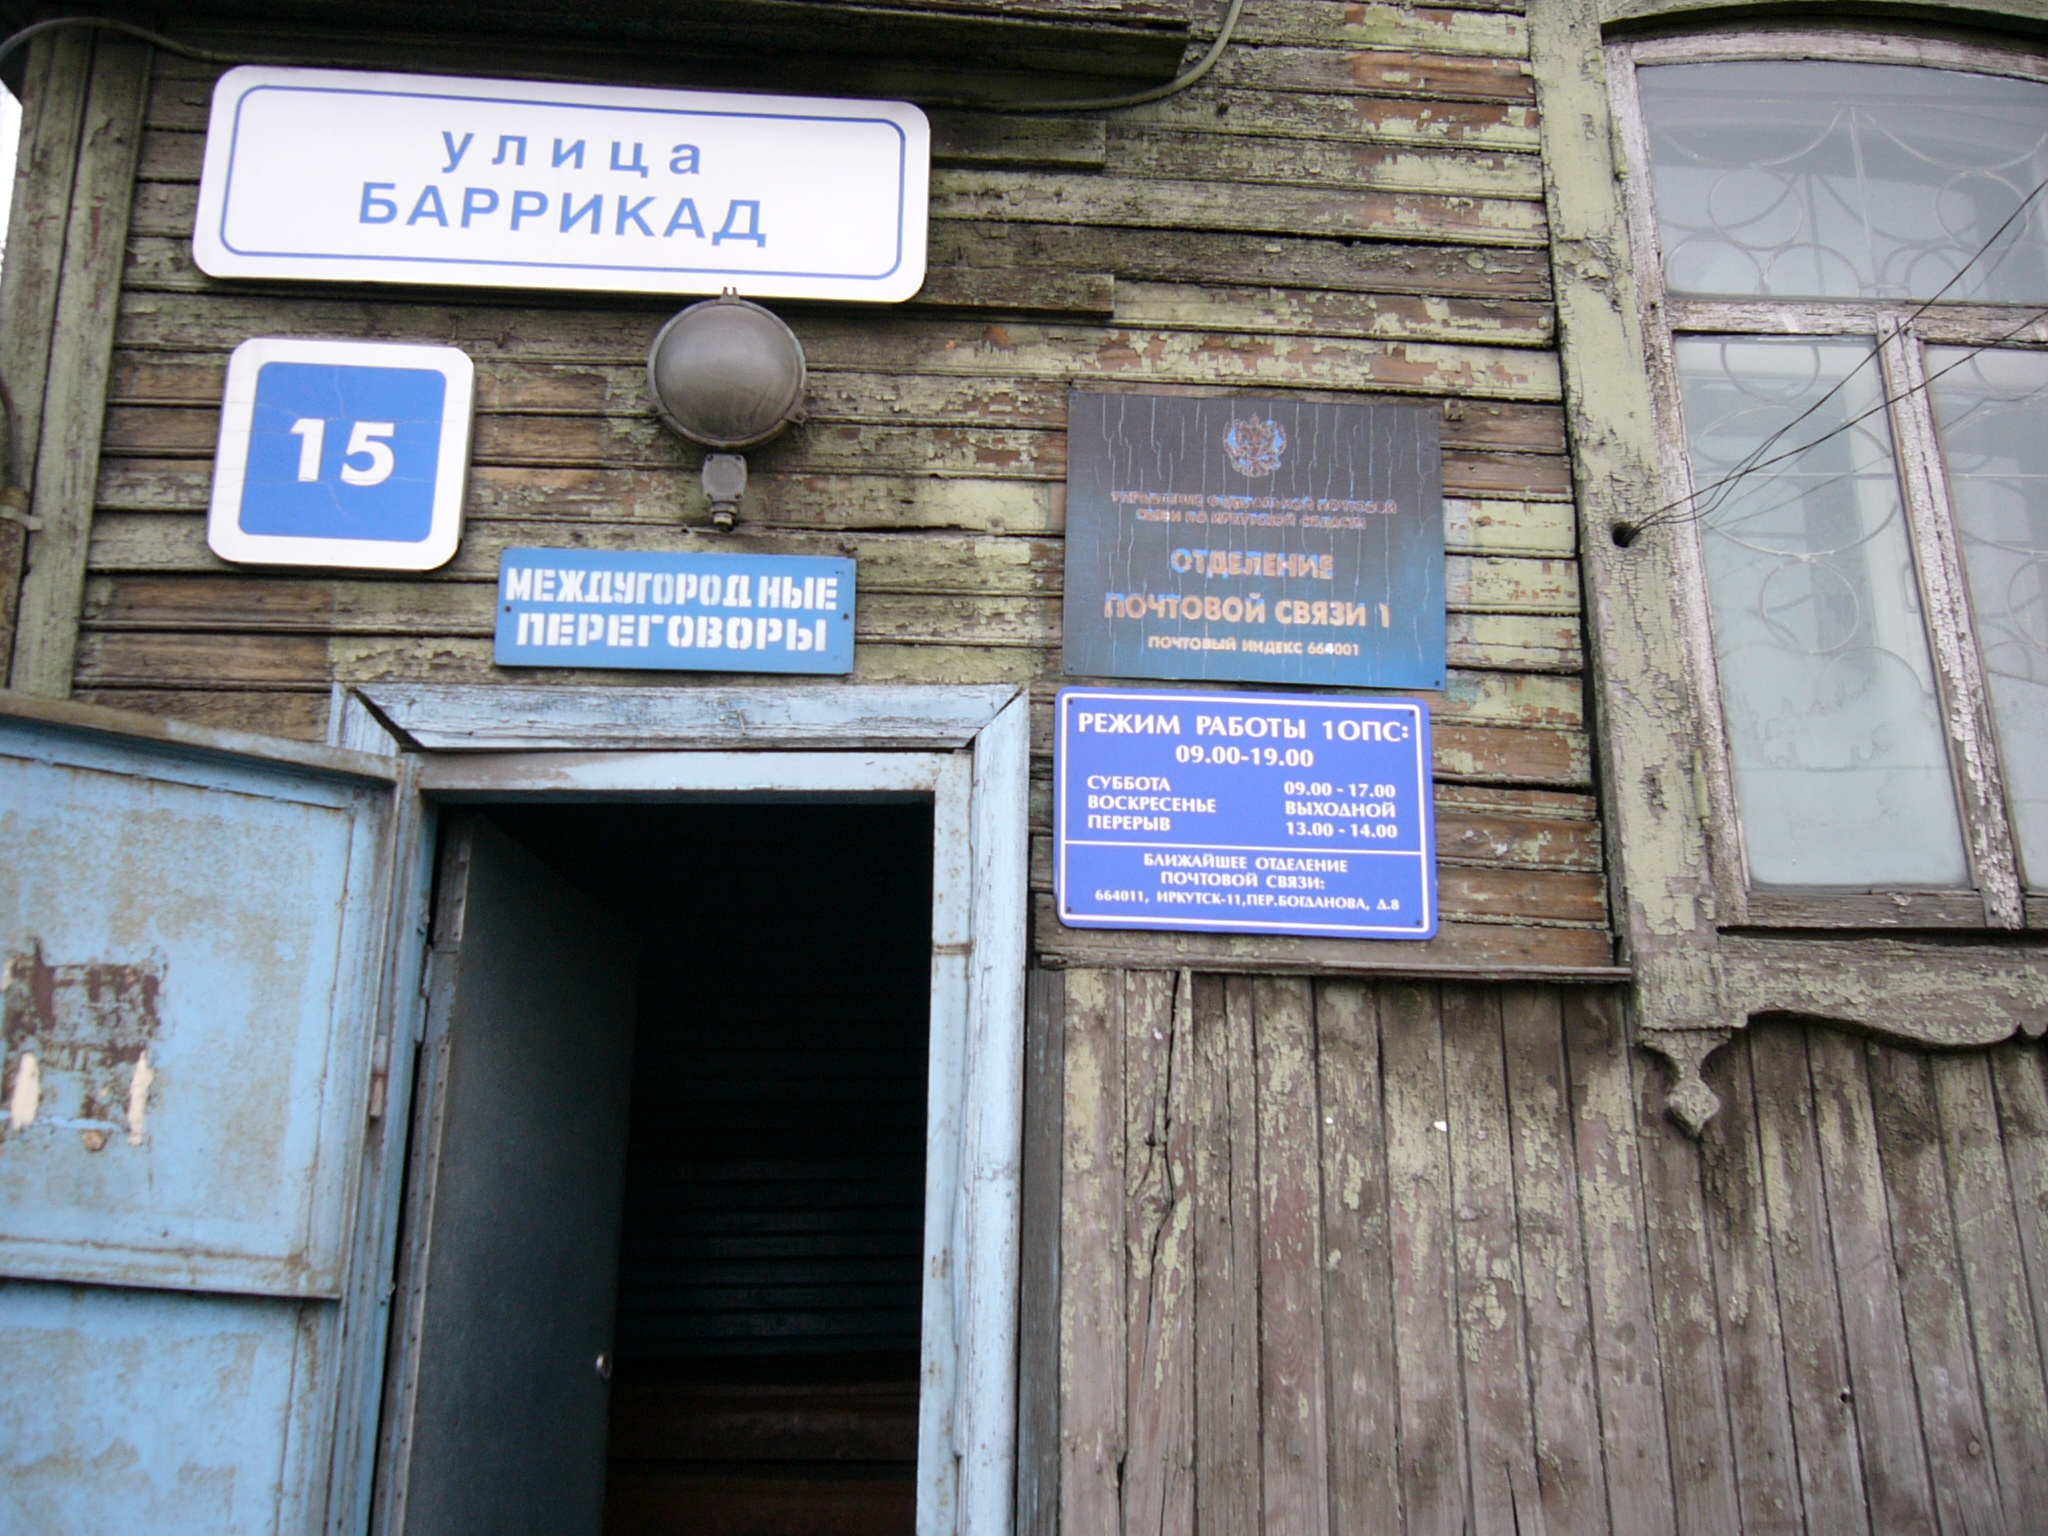 ВХОД, отделение почтовой связи 664001, Иркутская обл., Иркутск